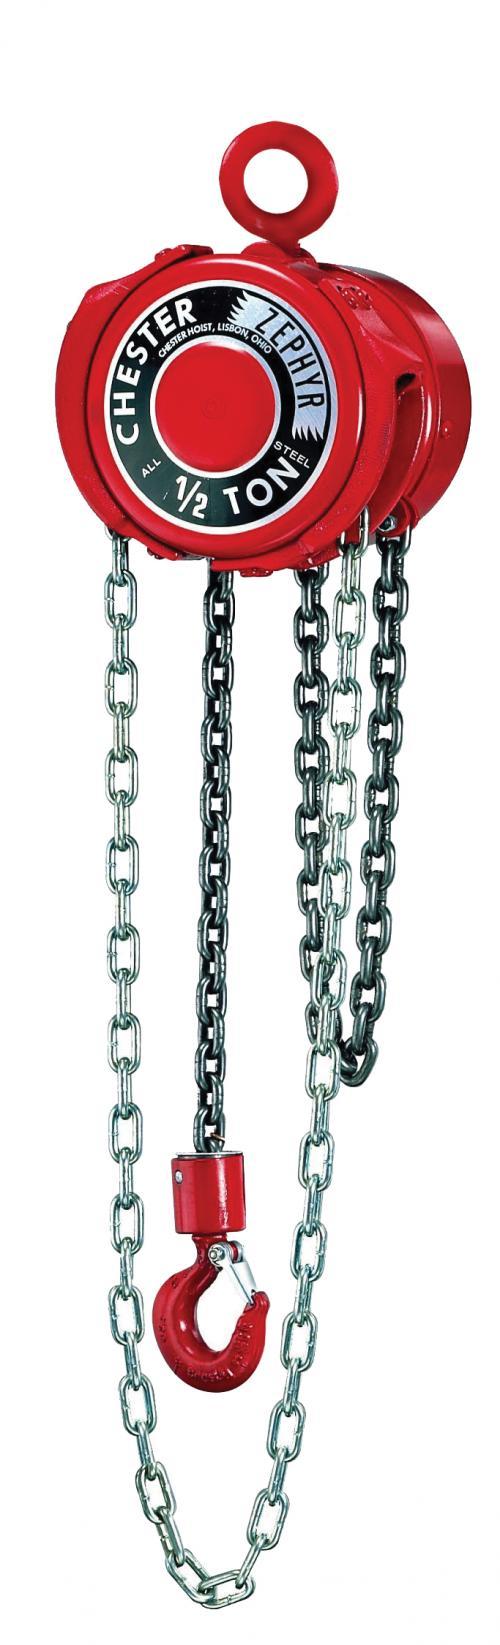 12 Ton Chester Zephyr | Manual Chain Hoist | Uescocranes.com